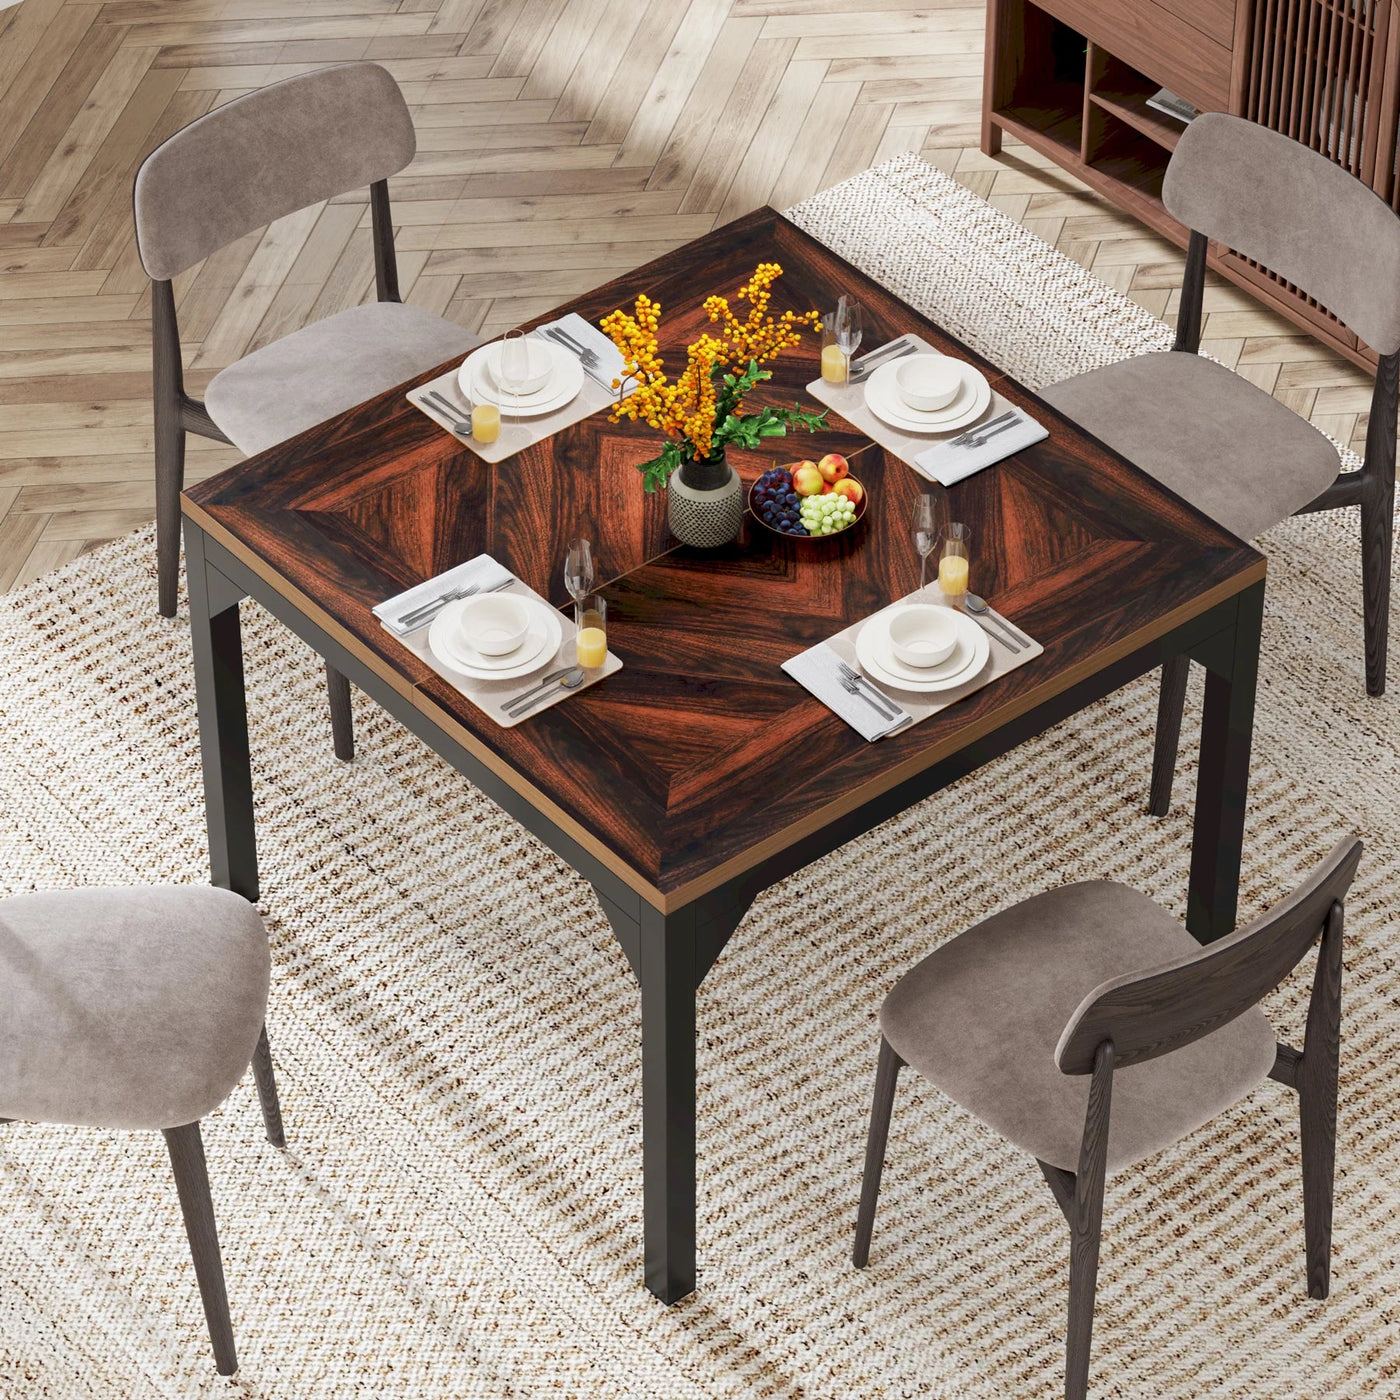 طاولة طعام مربعة فلوريس | طاولة مطبخ خشبية لطاولة العشاء لـ 4 أشخاص